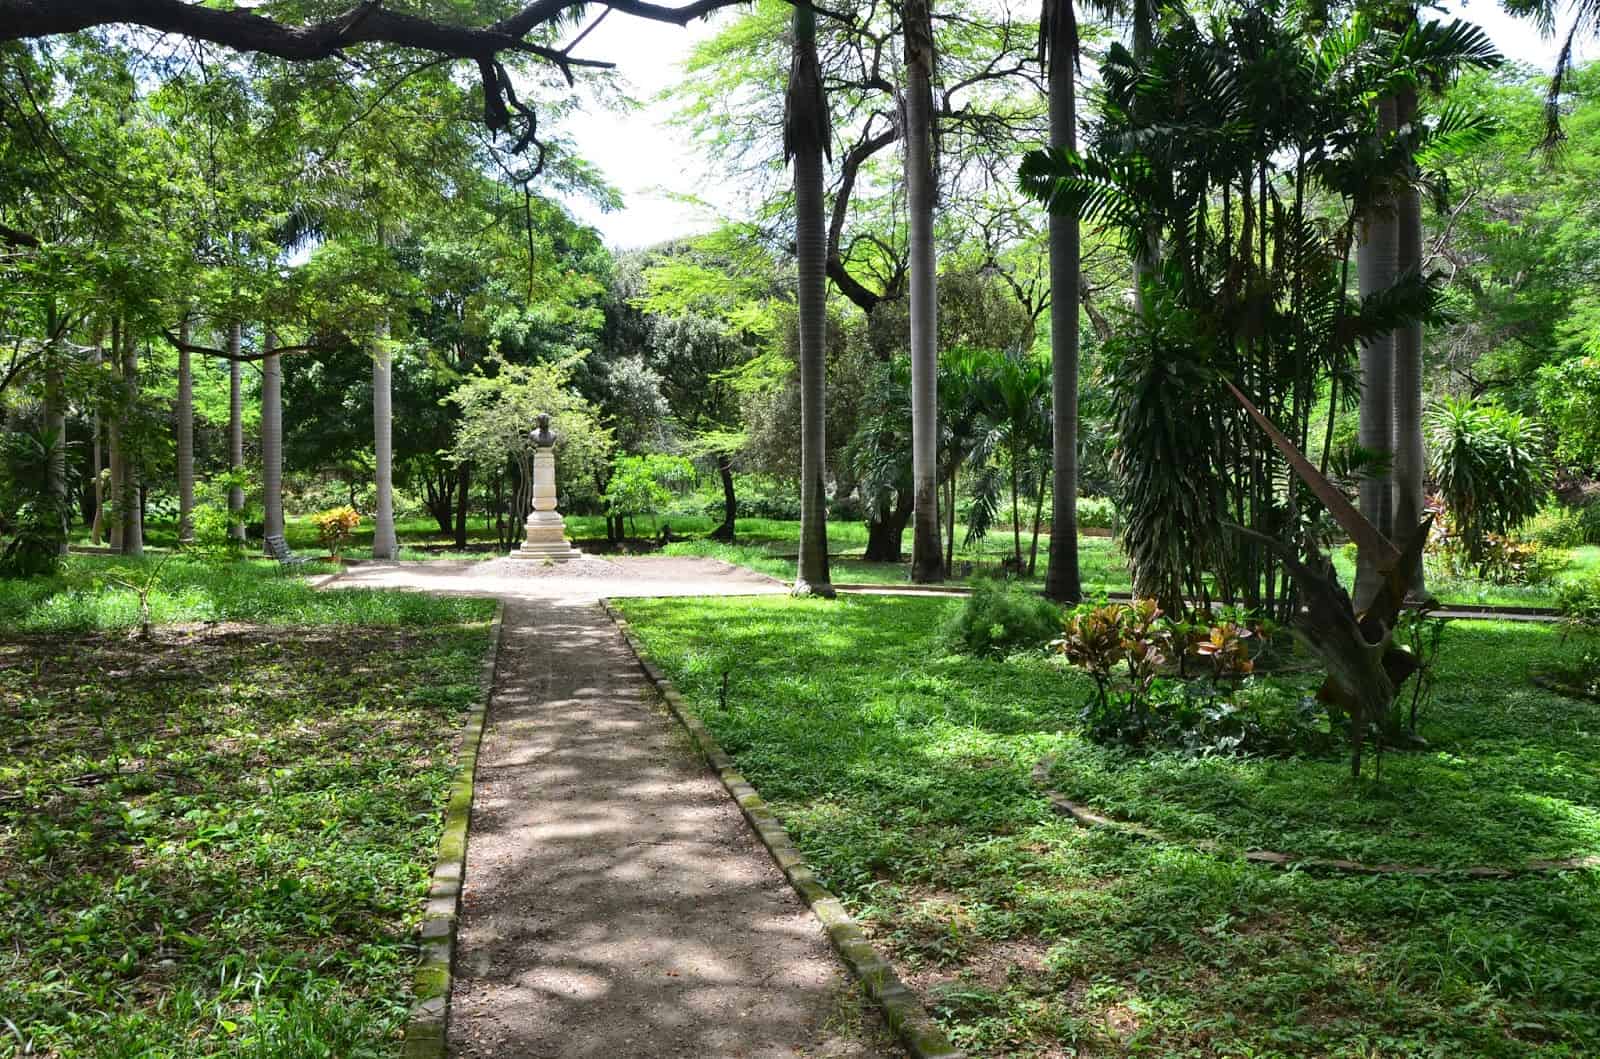 Botanical garden at La Quinta de San Pedro Alejandrino in Santa Marta, Magdalena, Colombia